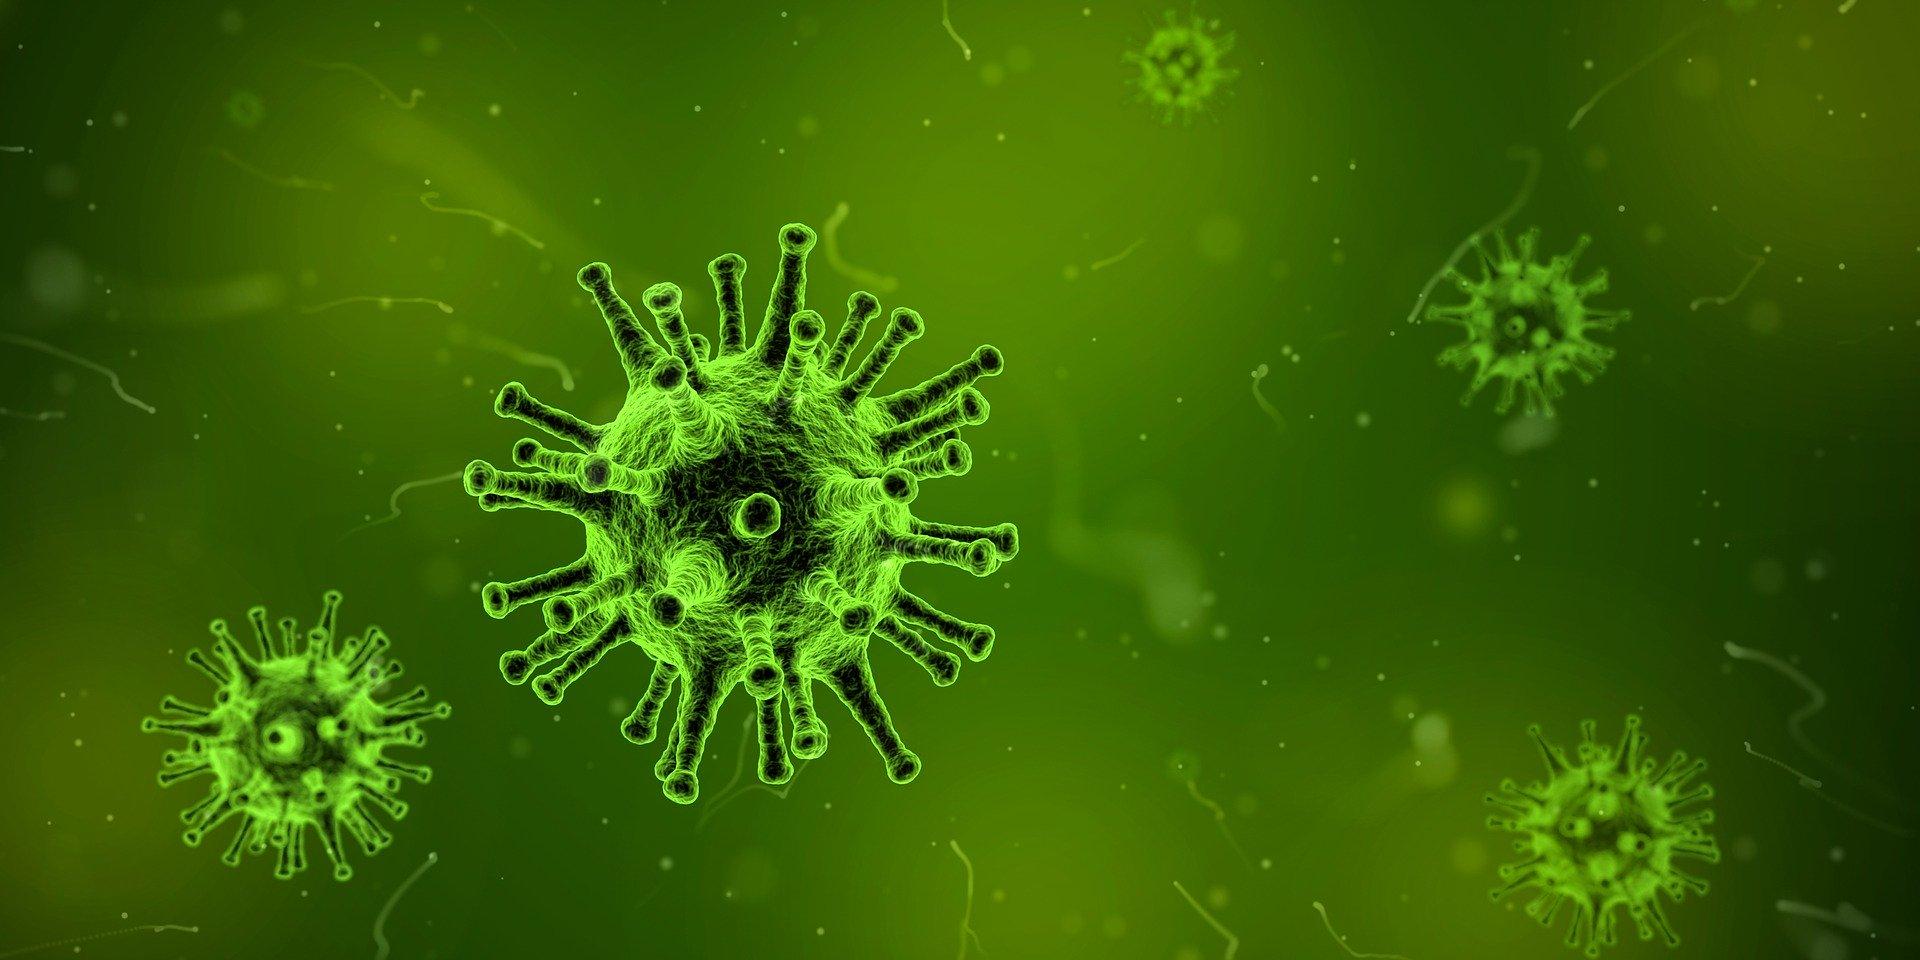 Un virus visto por un microscopio. Fuente: Pixabay.